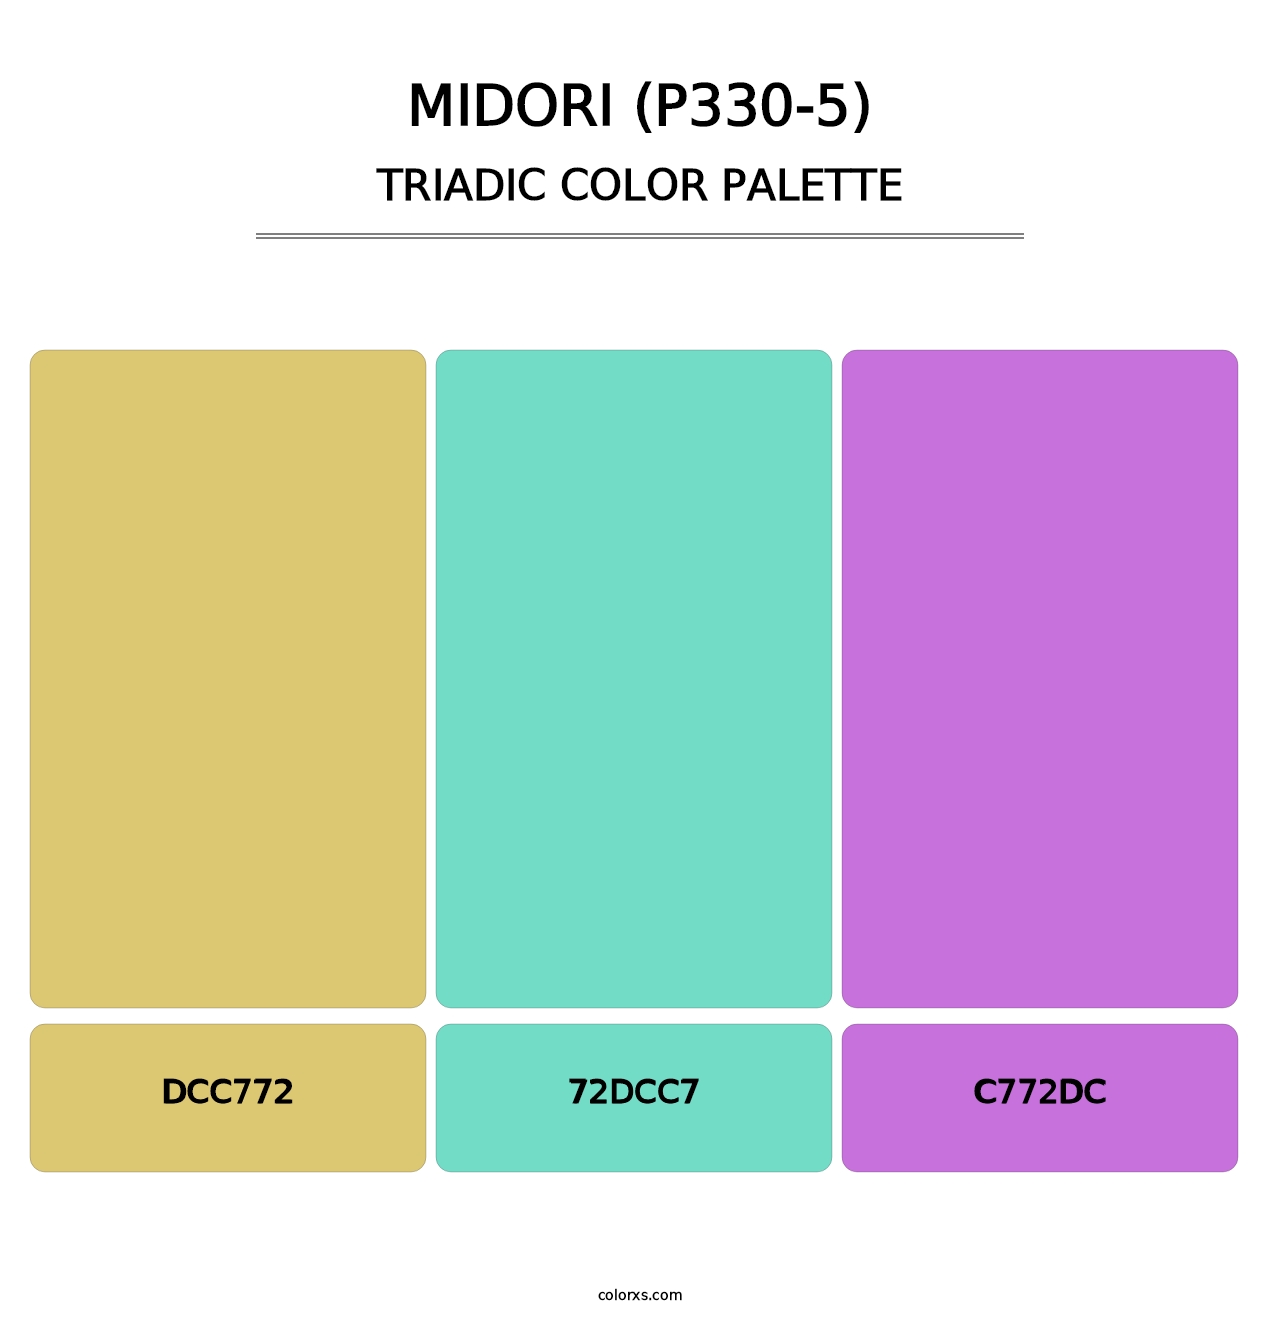 Midori (P330-5) - Triadic Color Palette